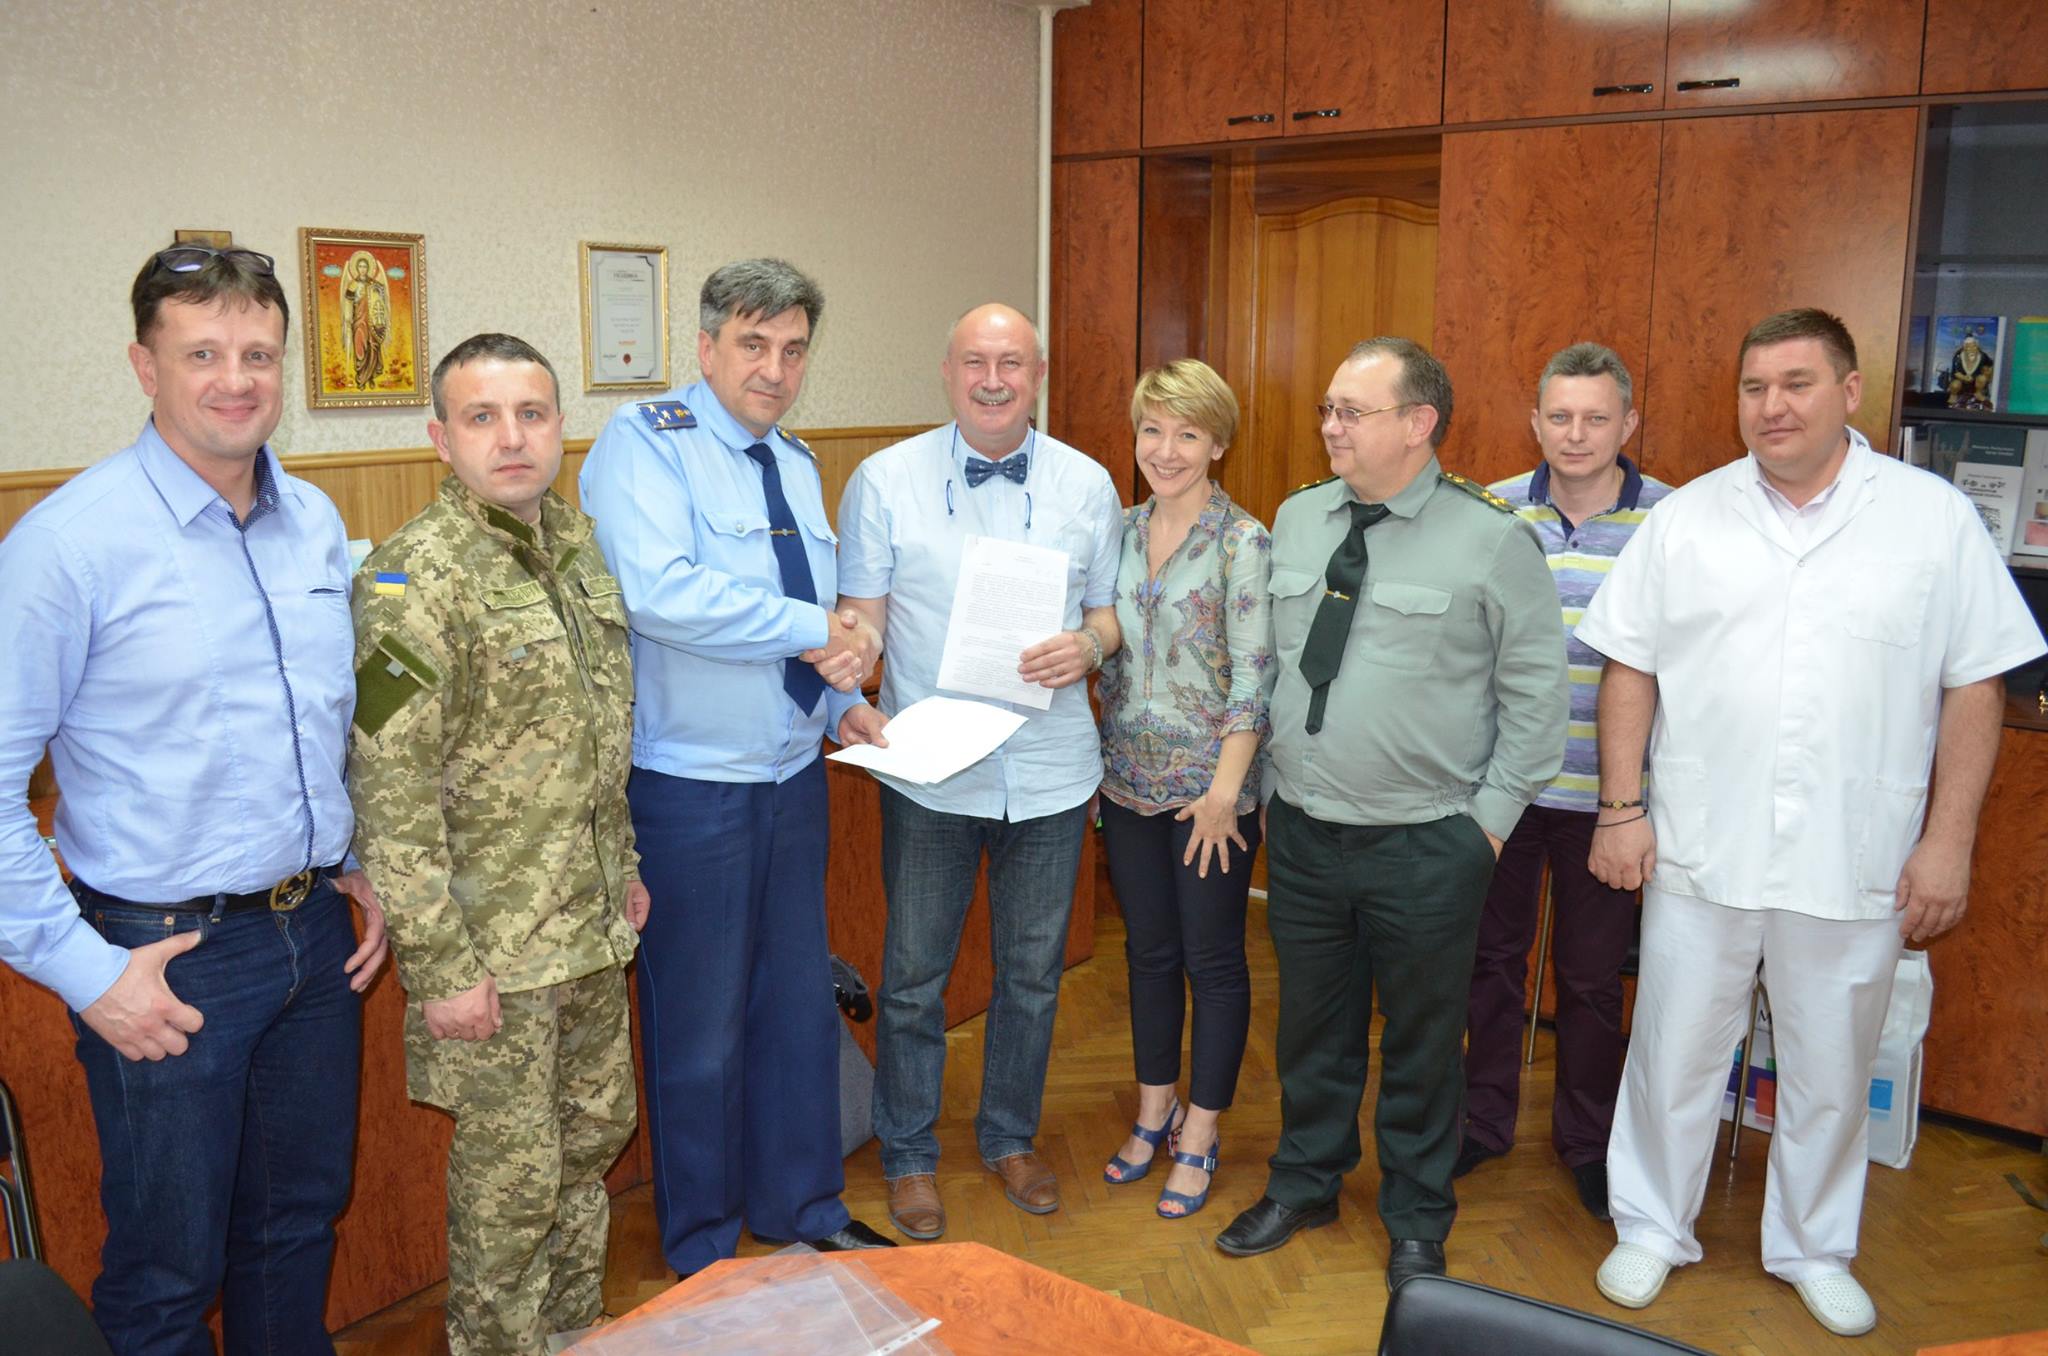 Меморандум про співпрацю між Військово-медичним департаментом МОУ та Українською асоціацією стоматологів